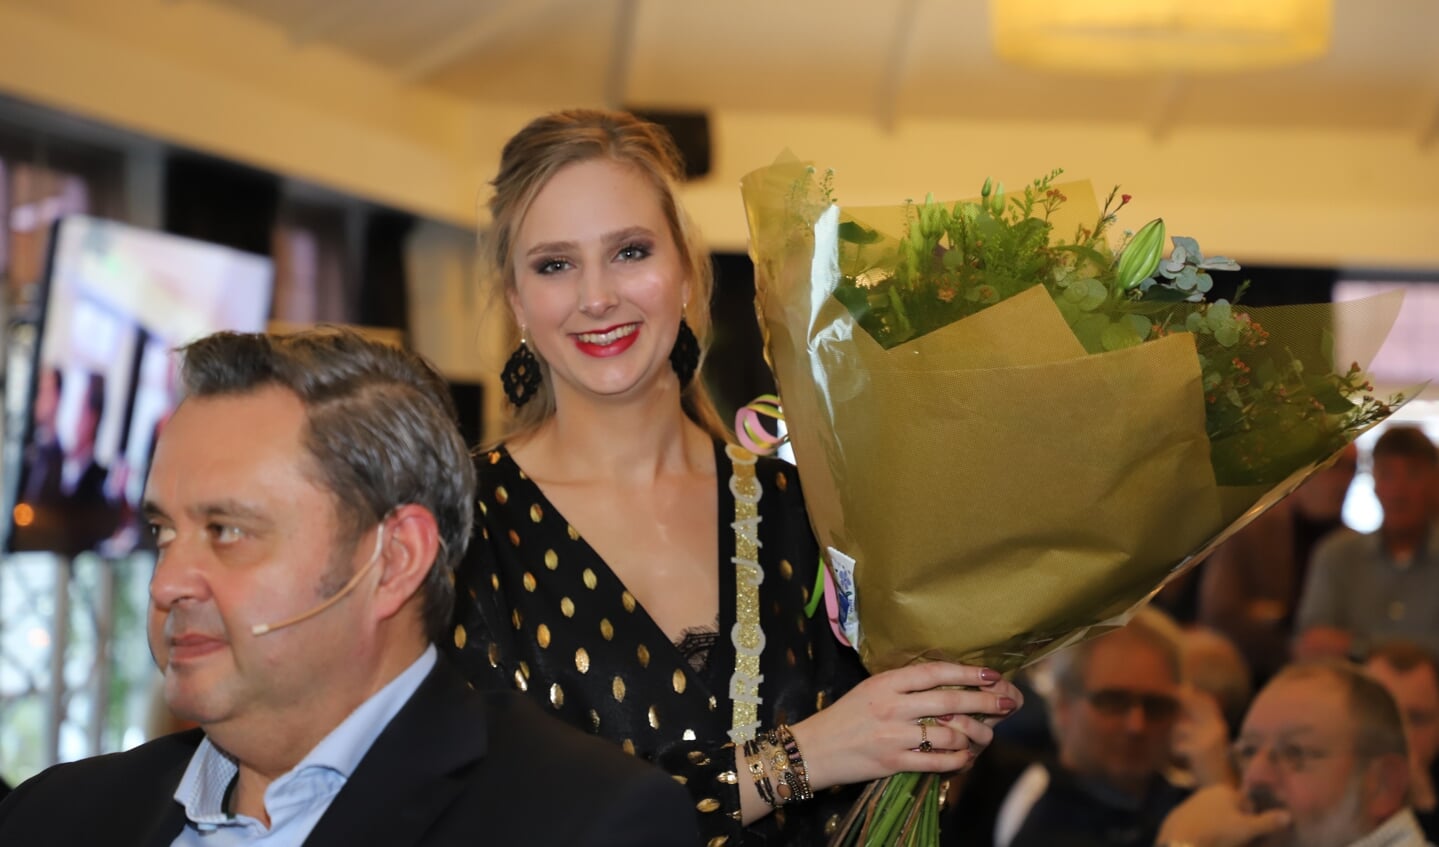 Miss GP Adrie van der Poel